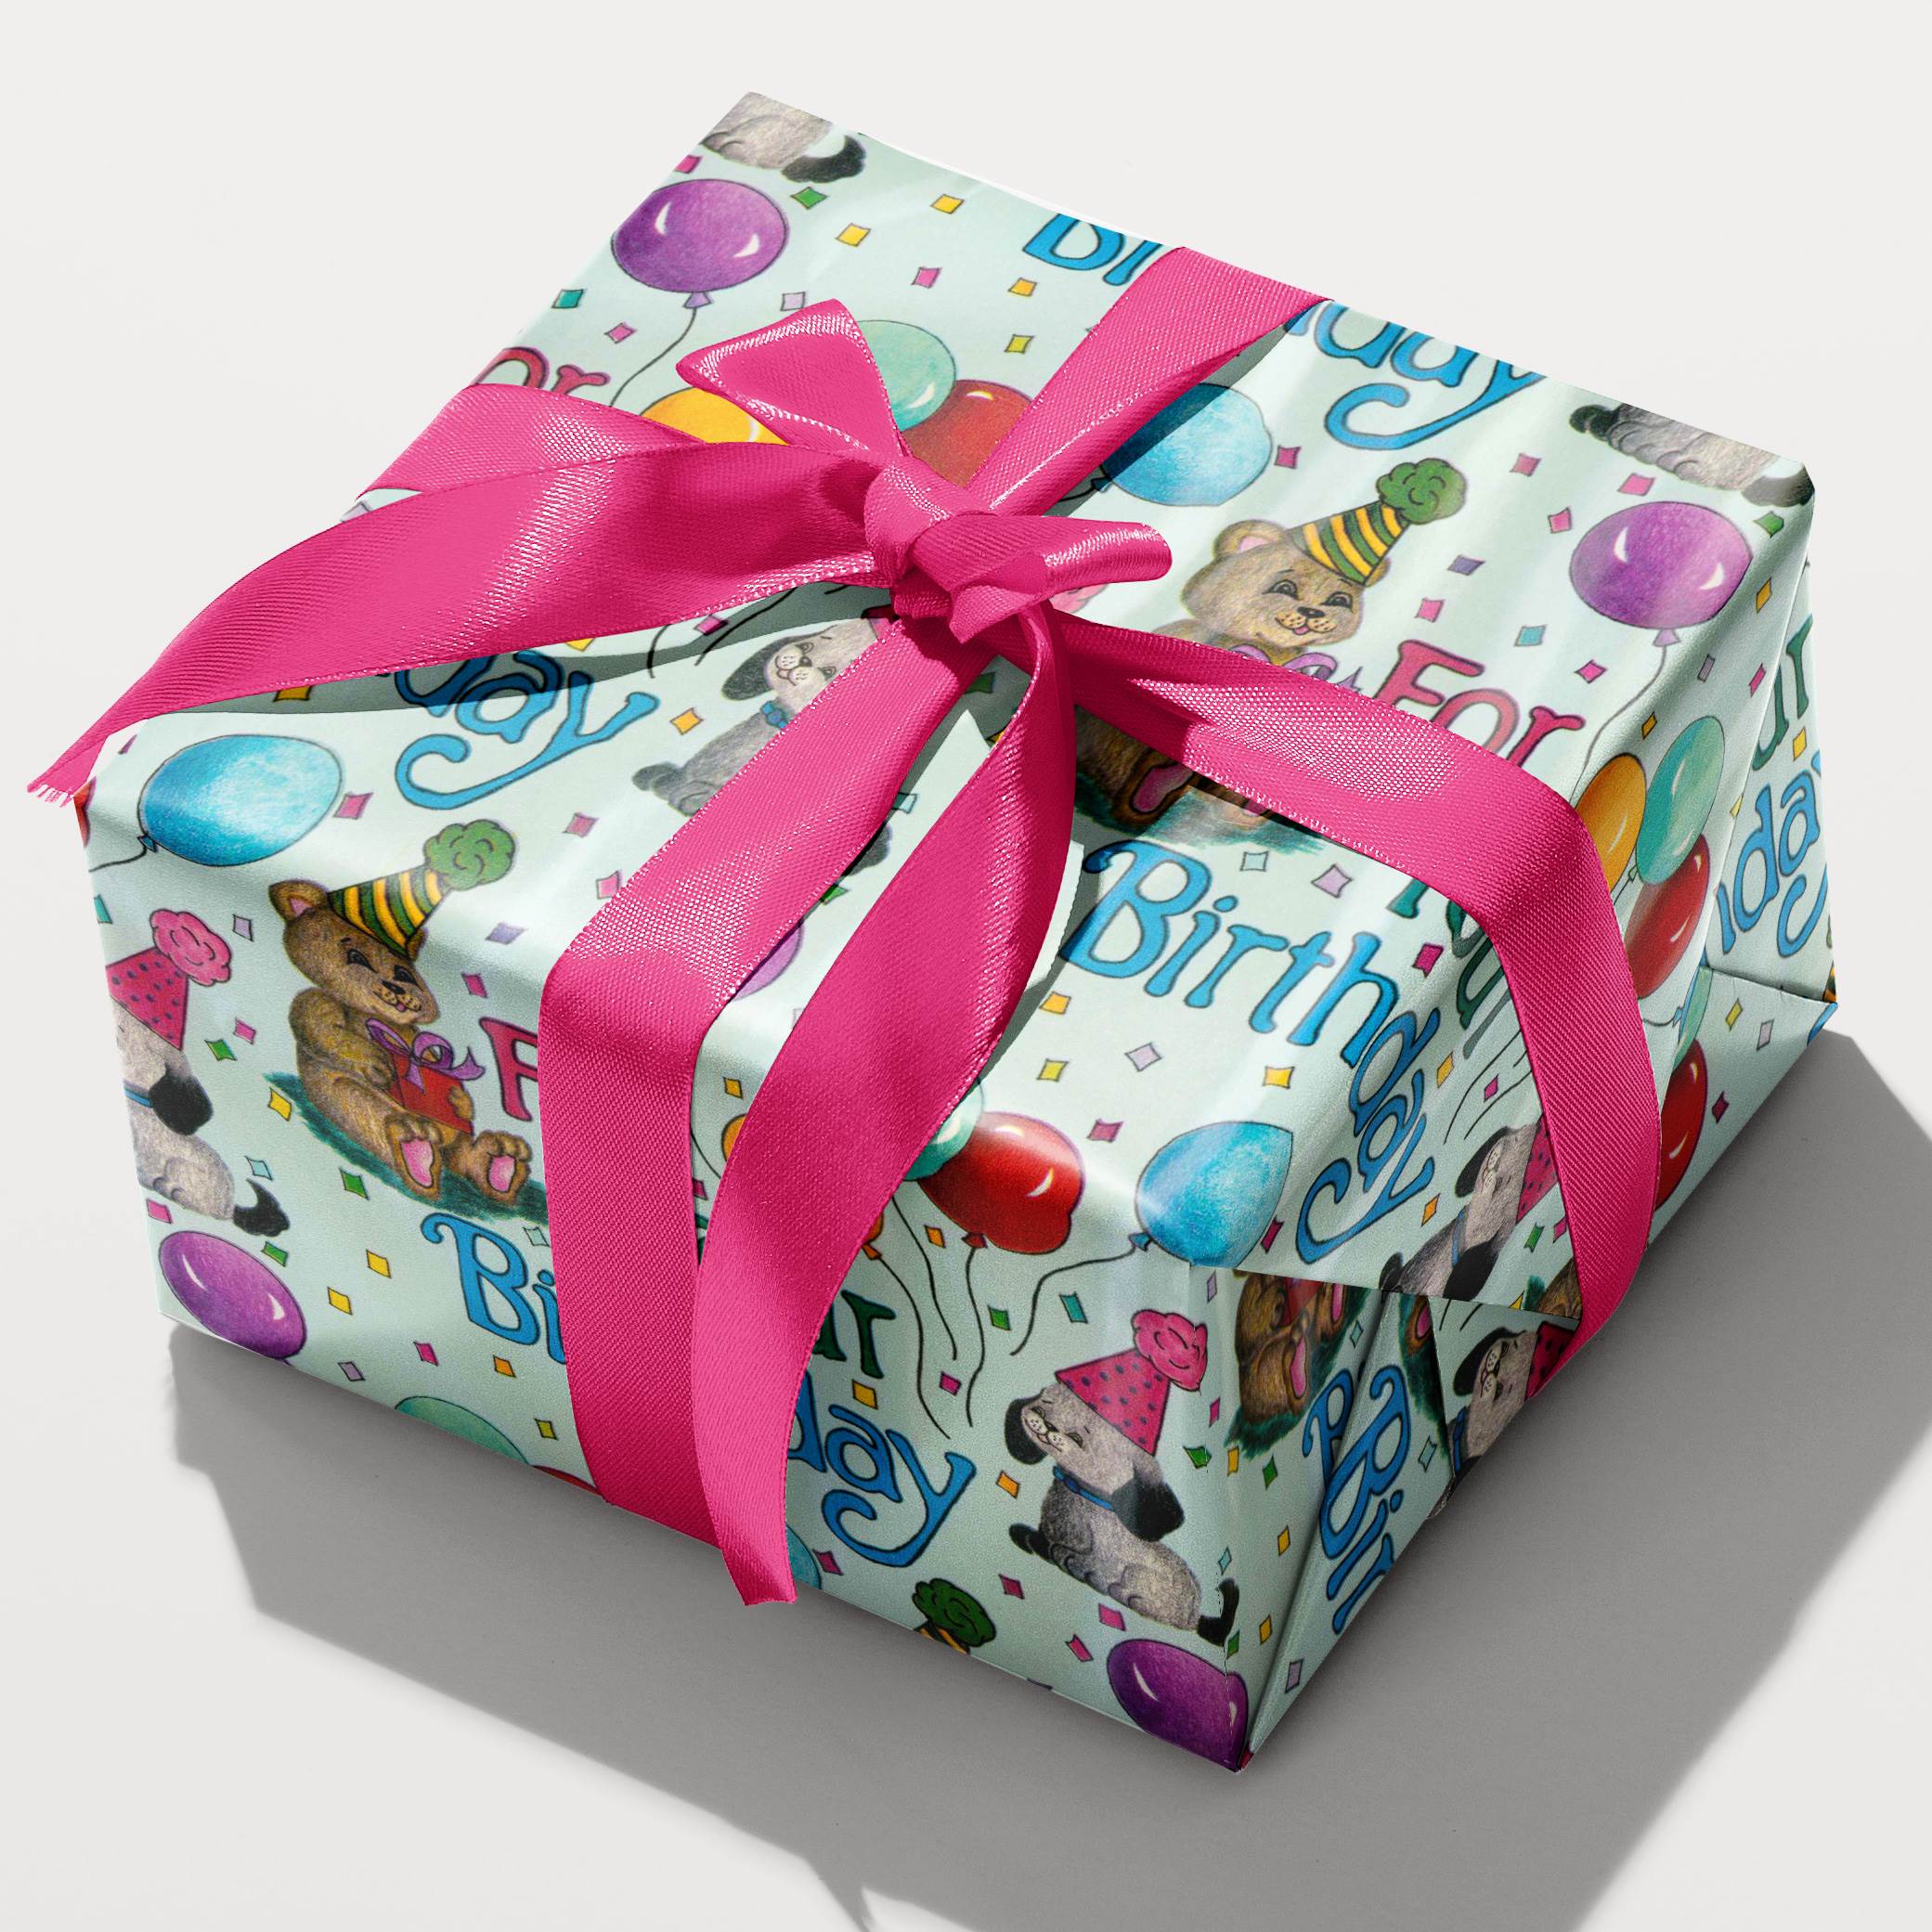 Beautiful Handmade Gift for Birthday | Handmade Birthday Gift Idea |  Tutorial - YouTube